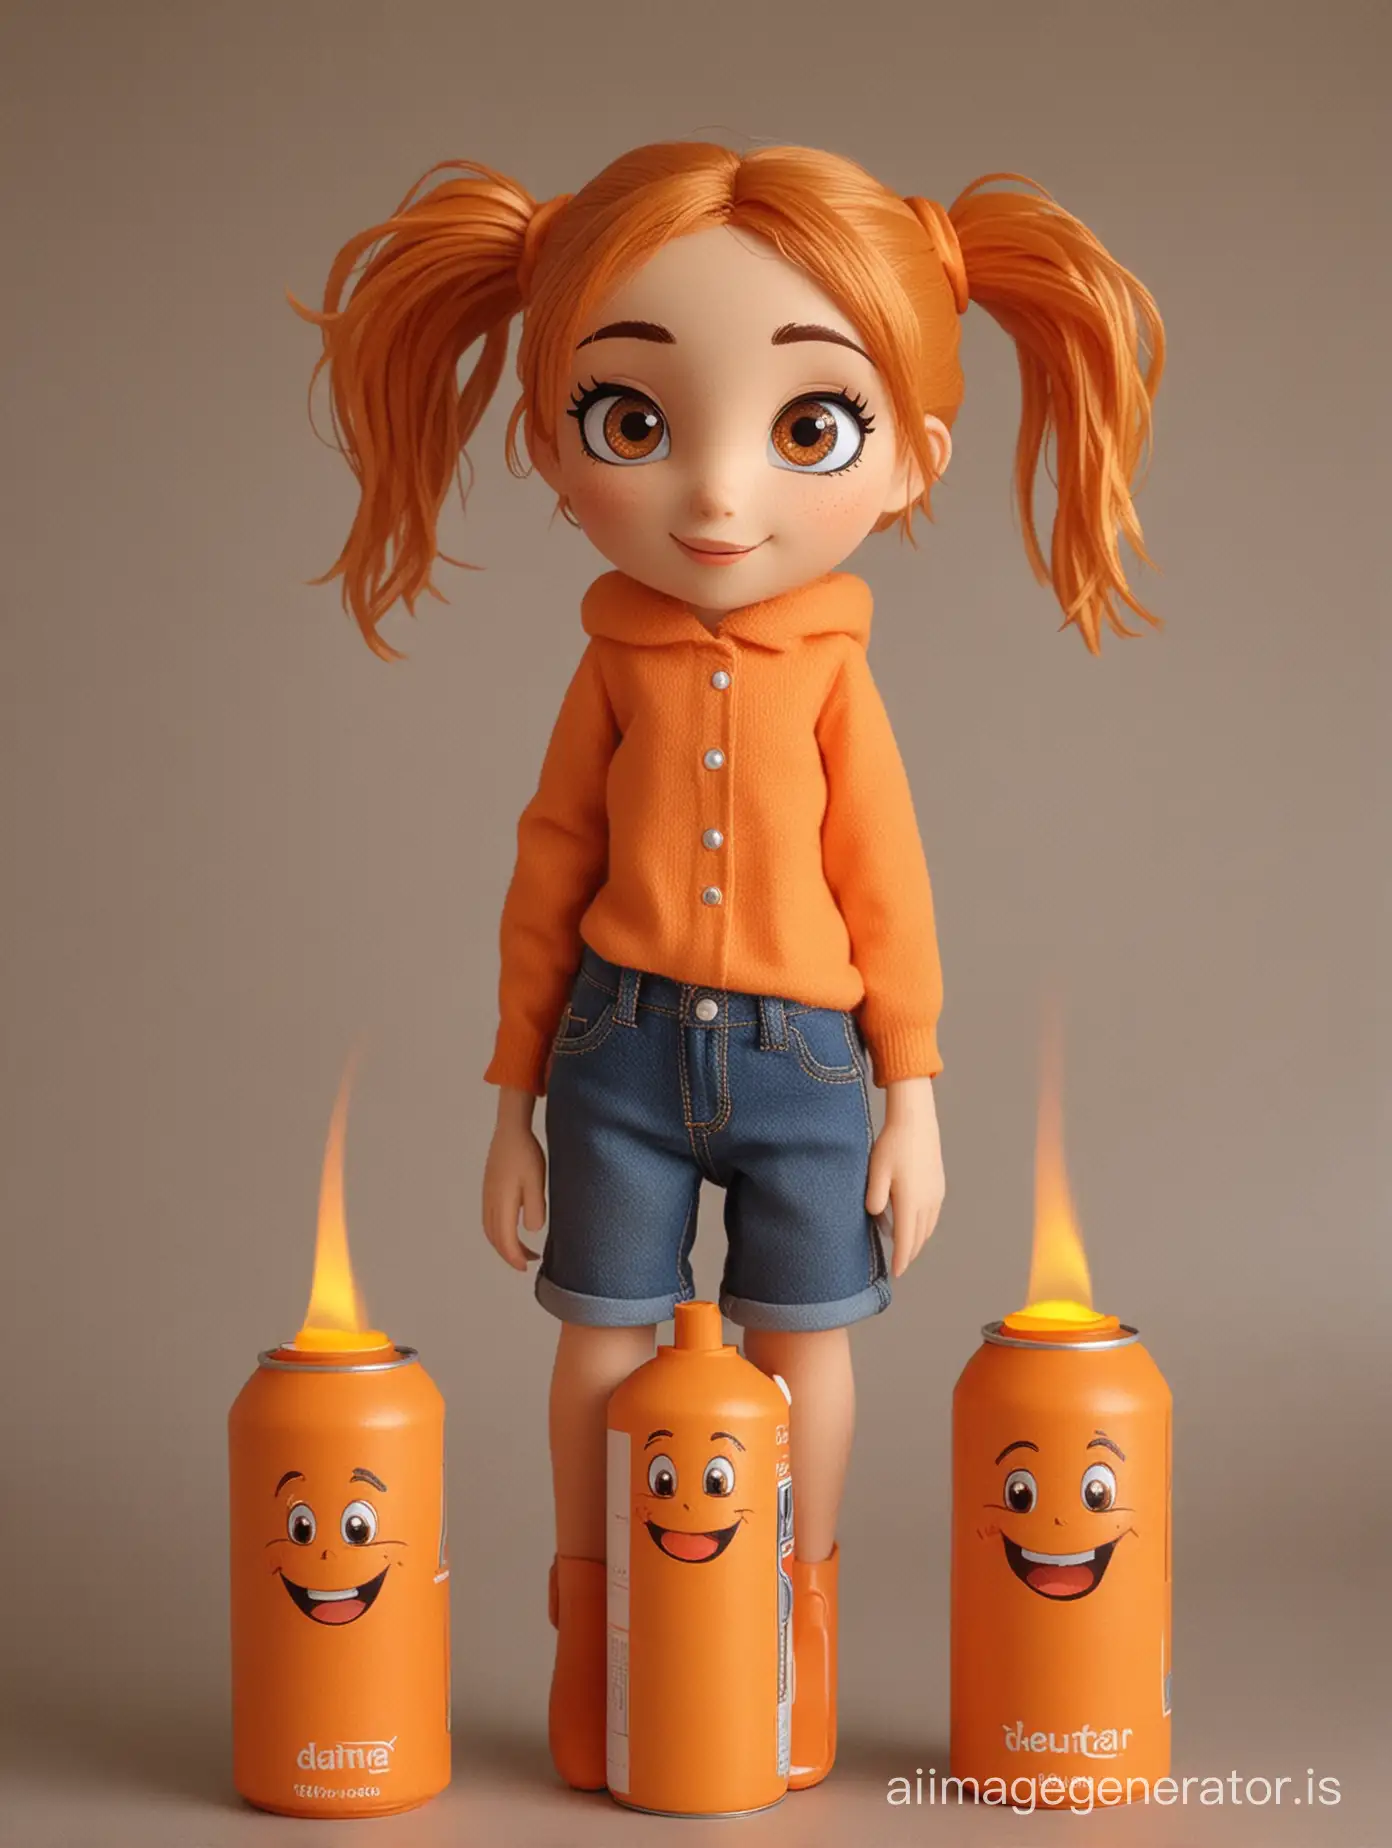 Affectionate-Girl-Transformed-into-Orange-Butane-Cylinder